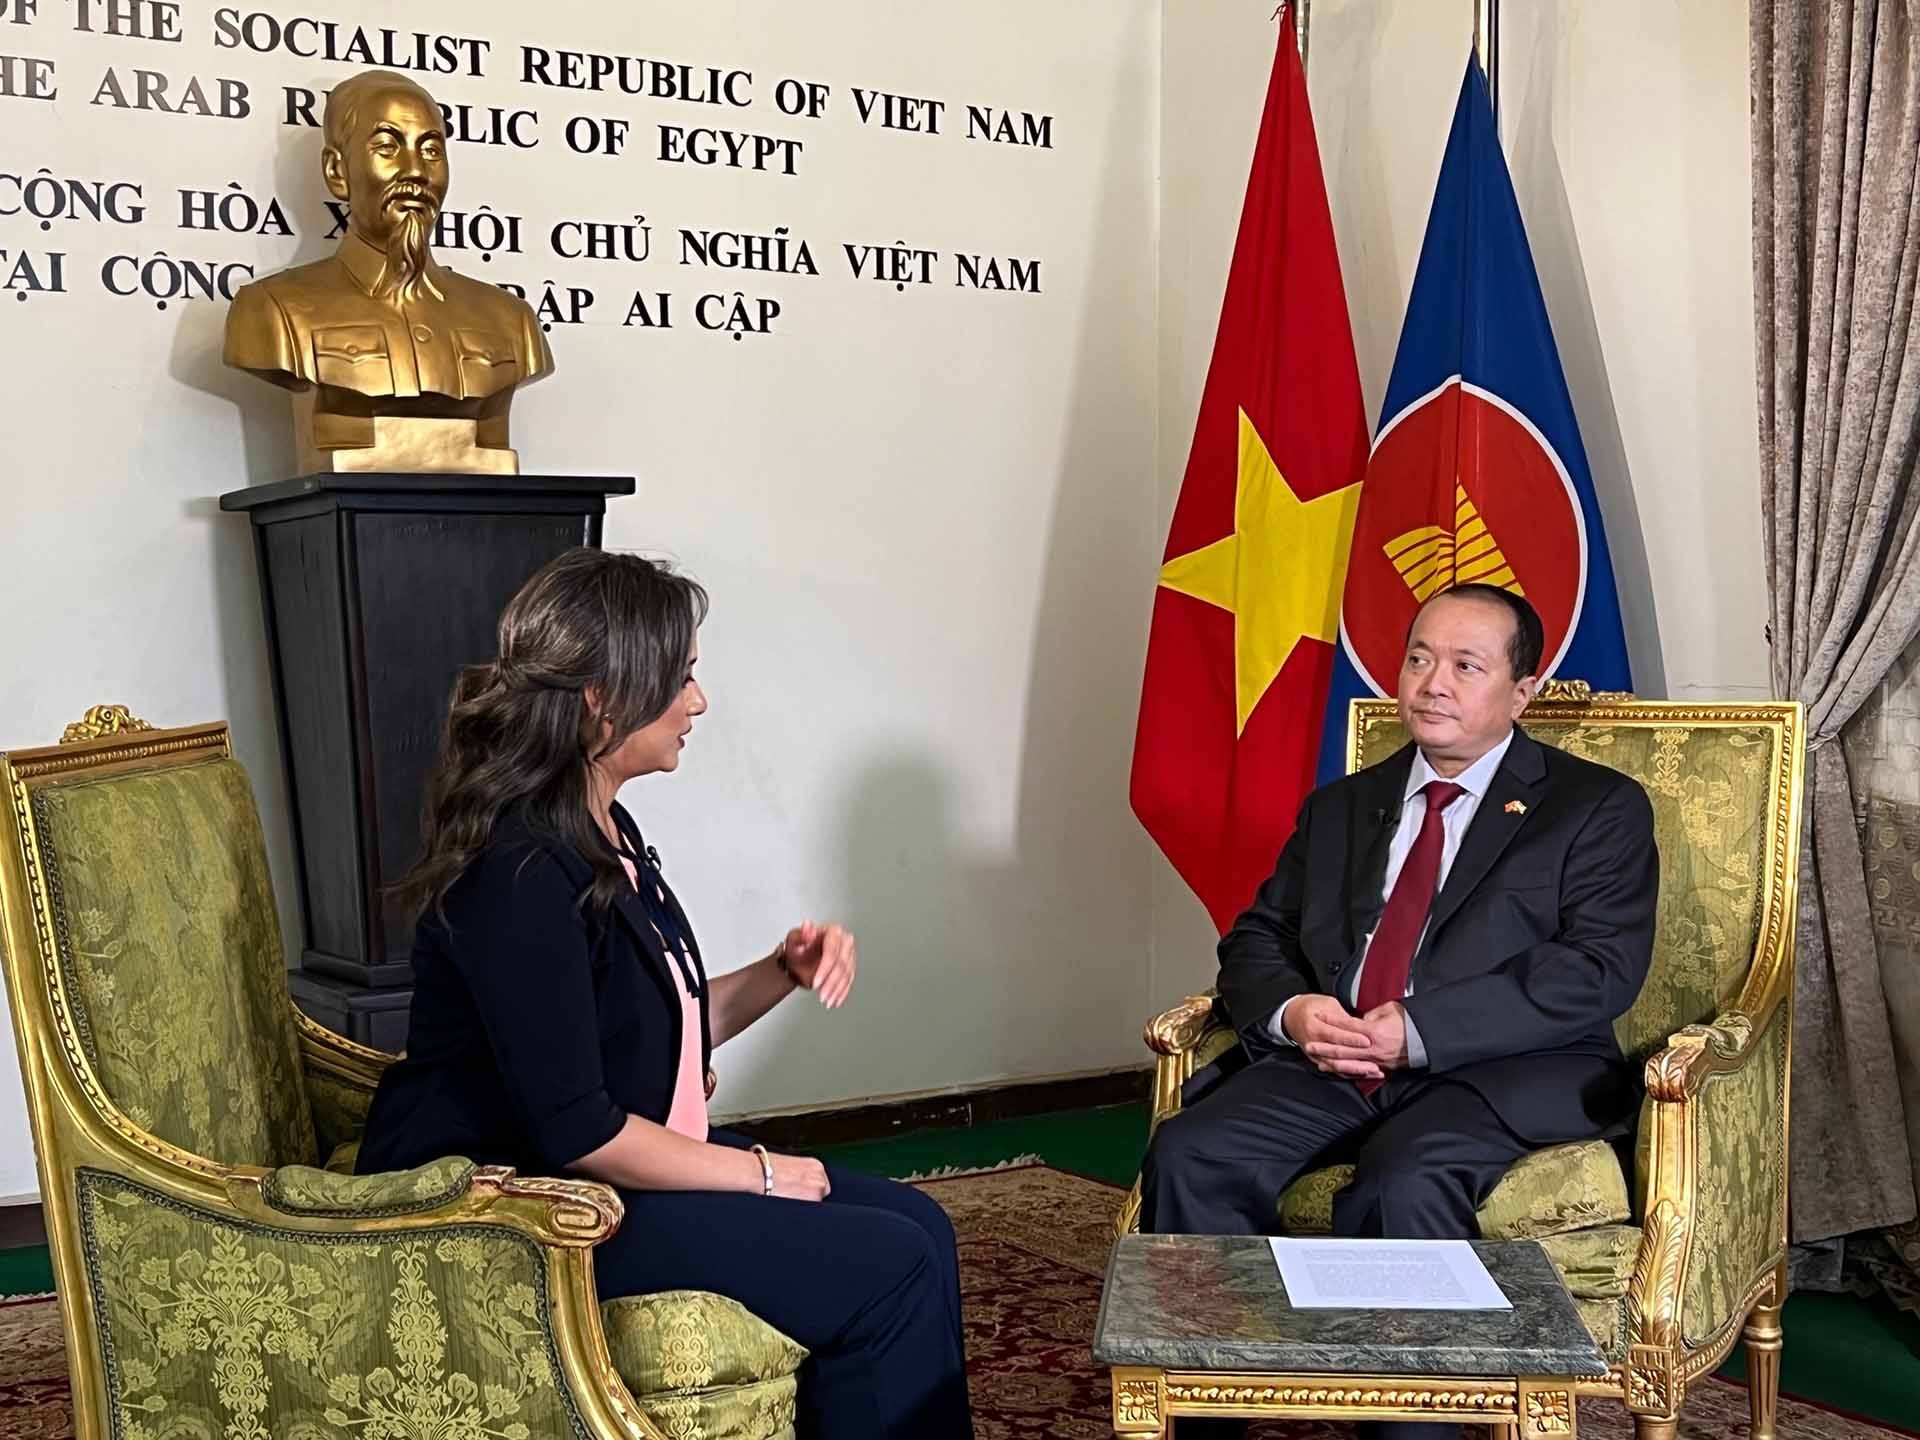 Đại sứ Nguyễn Huy Dũng trả lời lời phỏng vấn của Kênh truyền hình Sada Elbalad.